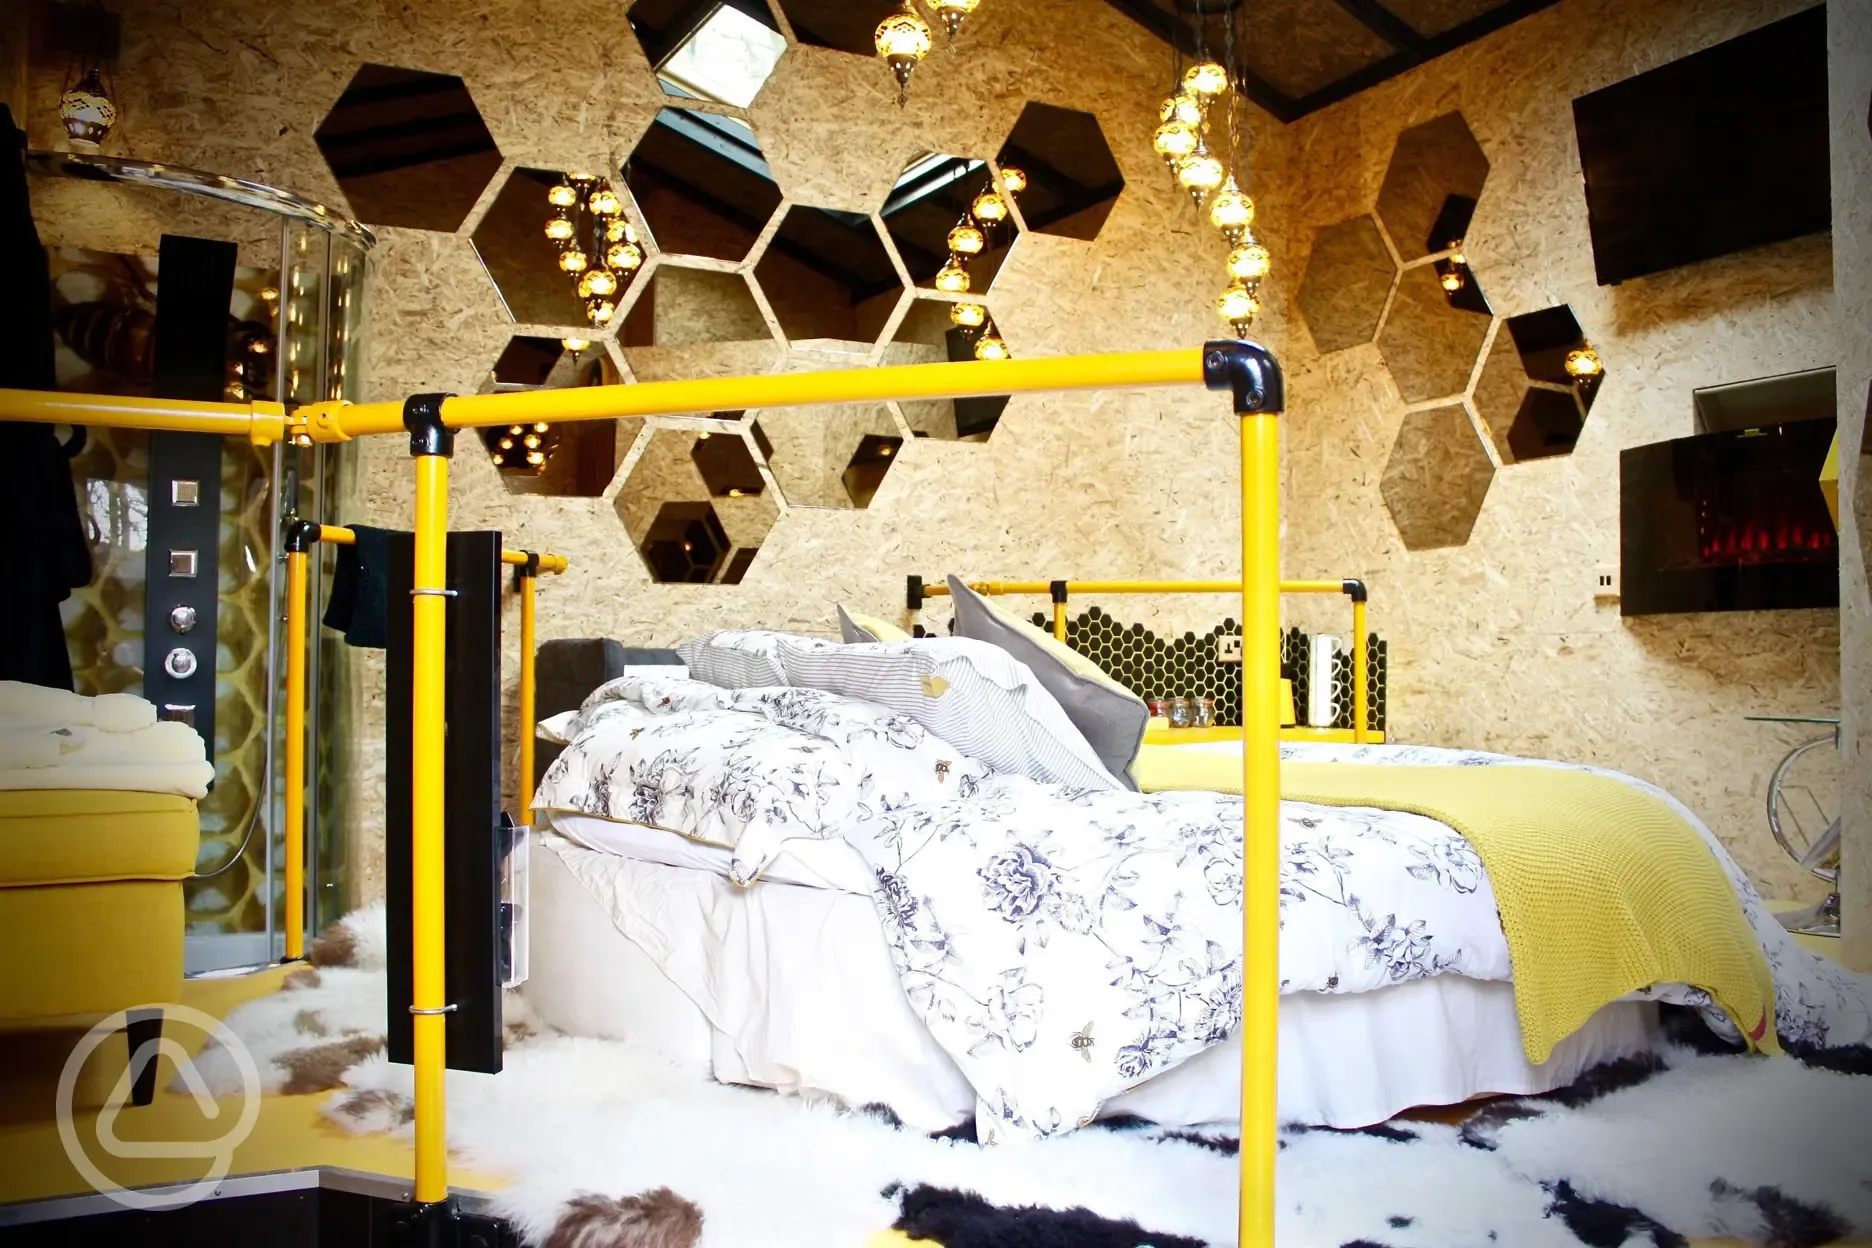 Beehive interior